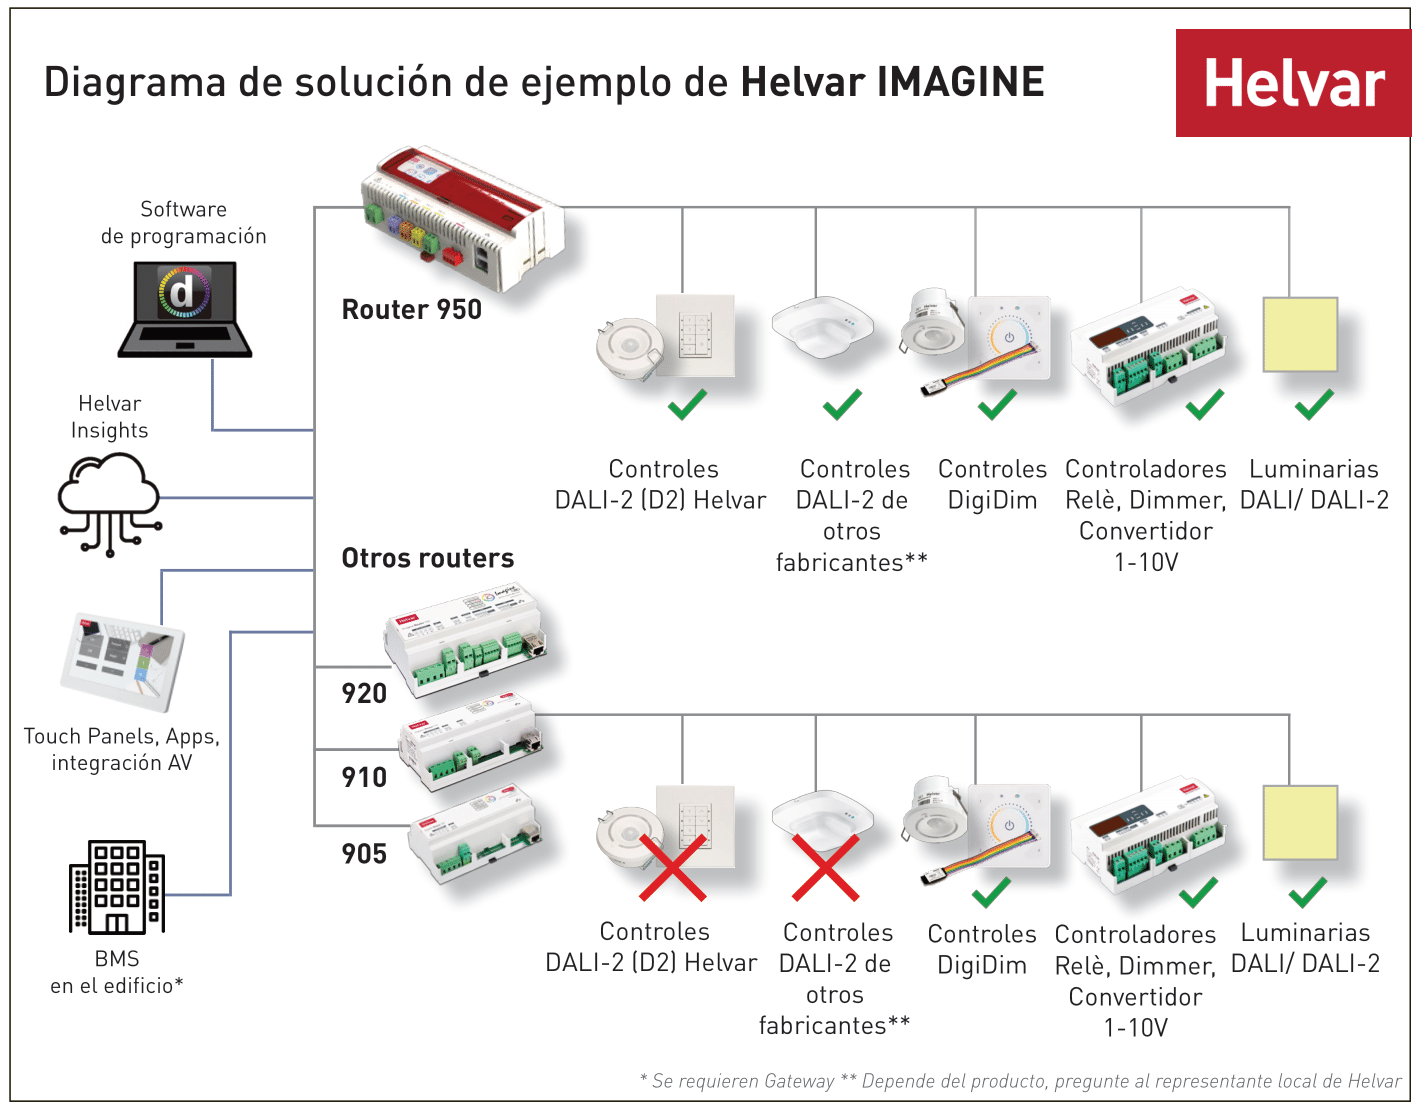 ES_Helvar_Imagine_Solution_Diagram_2022_final-1